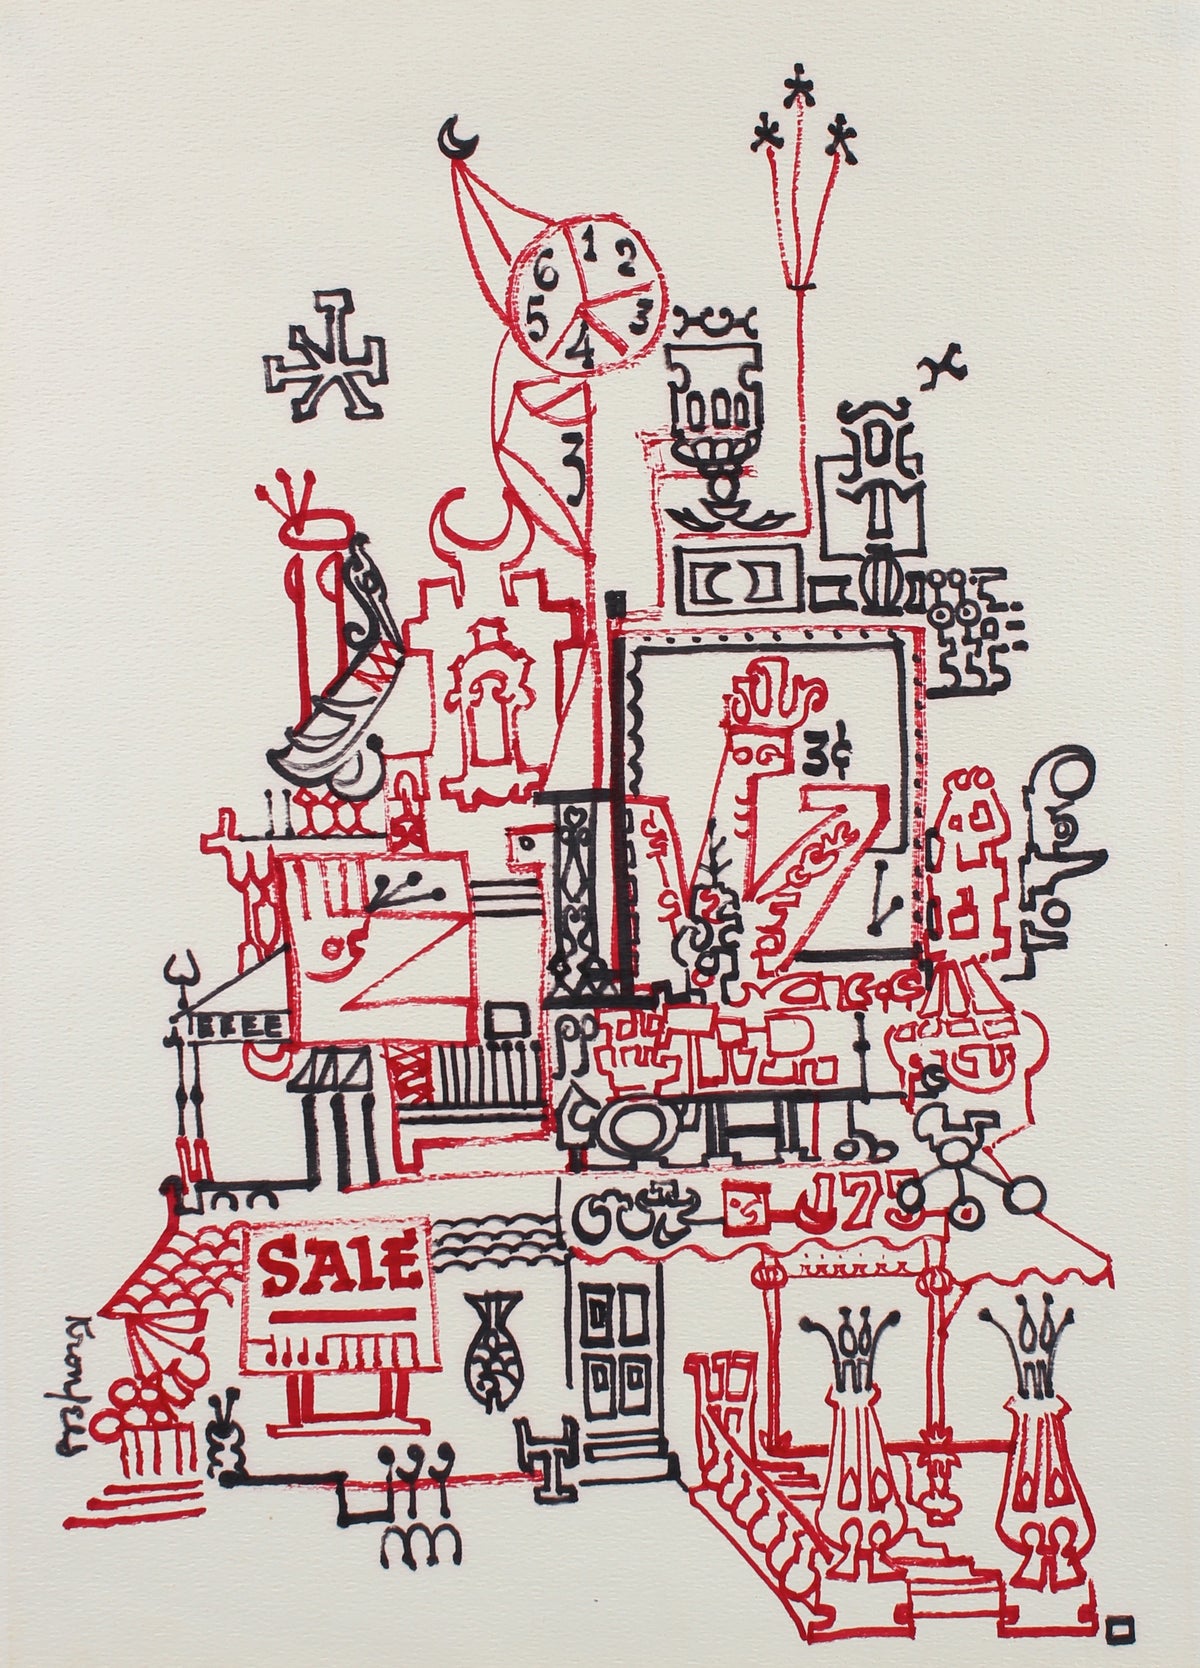 Red &amp; Black Fantastical Architecture Drawing&lt;br&gt;1960s Ink&lt;br&gt;&lt;br&gt;#99543